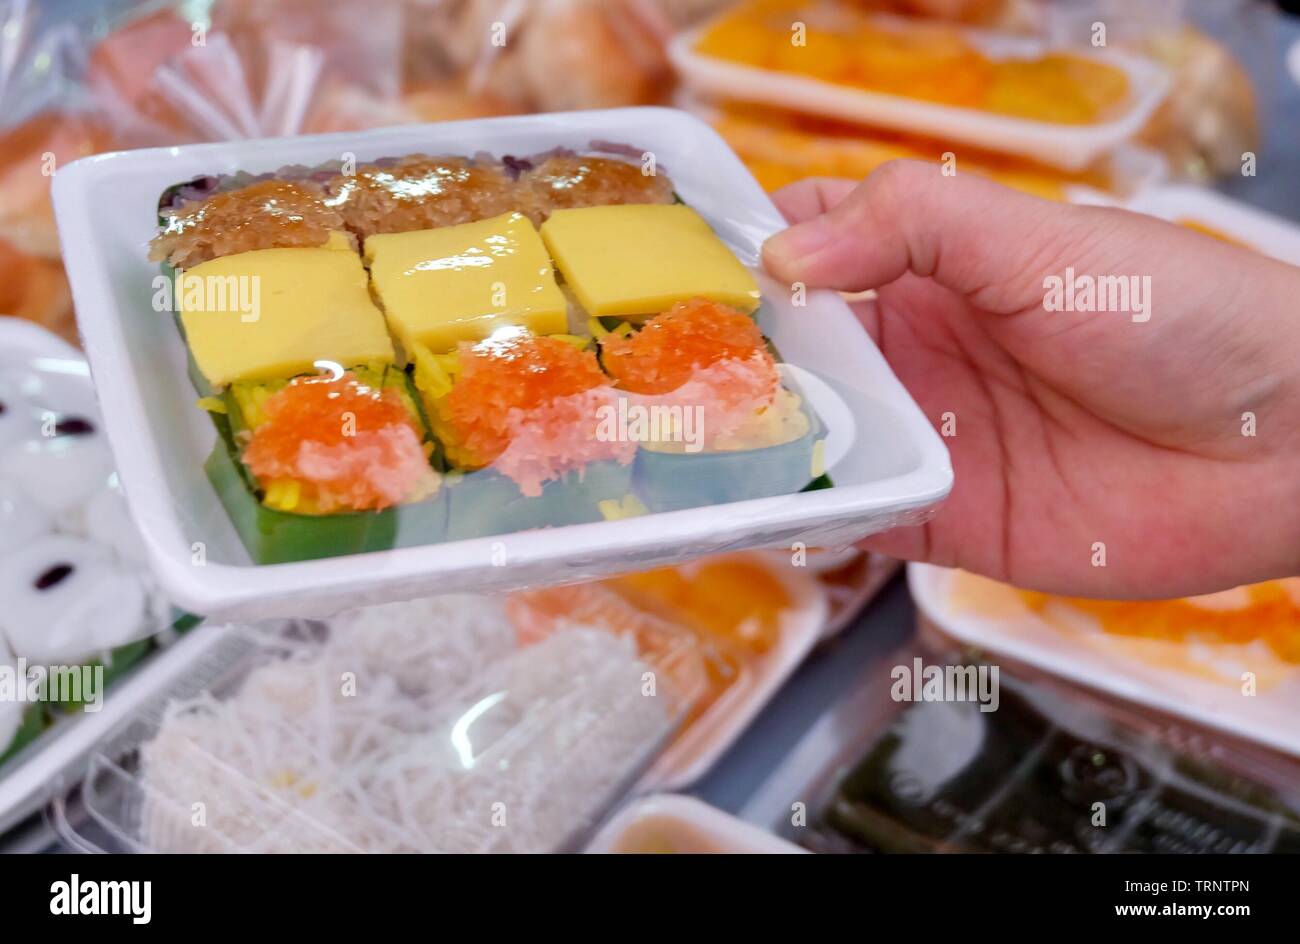 Dessert traditionnel thaï, main tenant le riz gluant sucré garni d'oeufs cuits à la crème anglaise, du poisson séché et des crevettes frites dans un coffret plastique. Banque D'Images